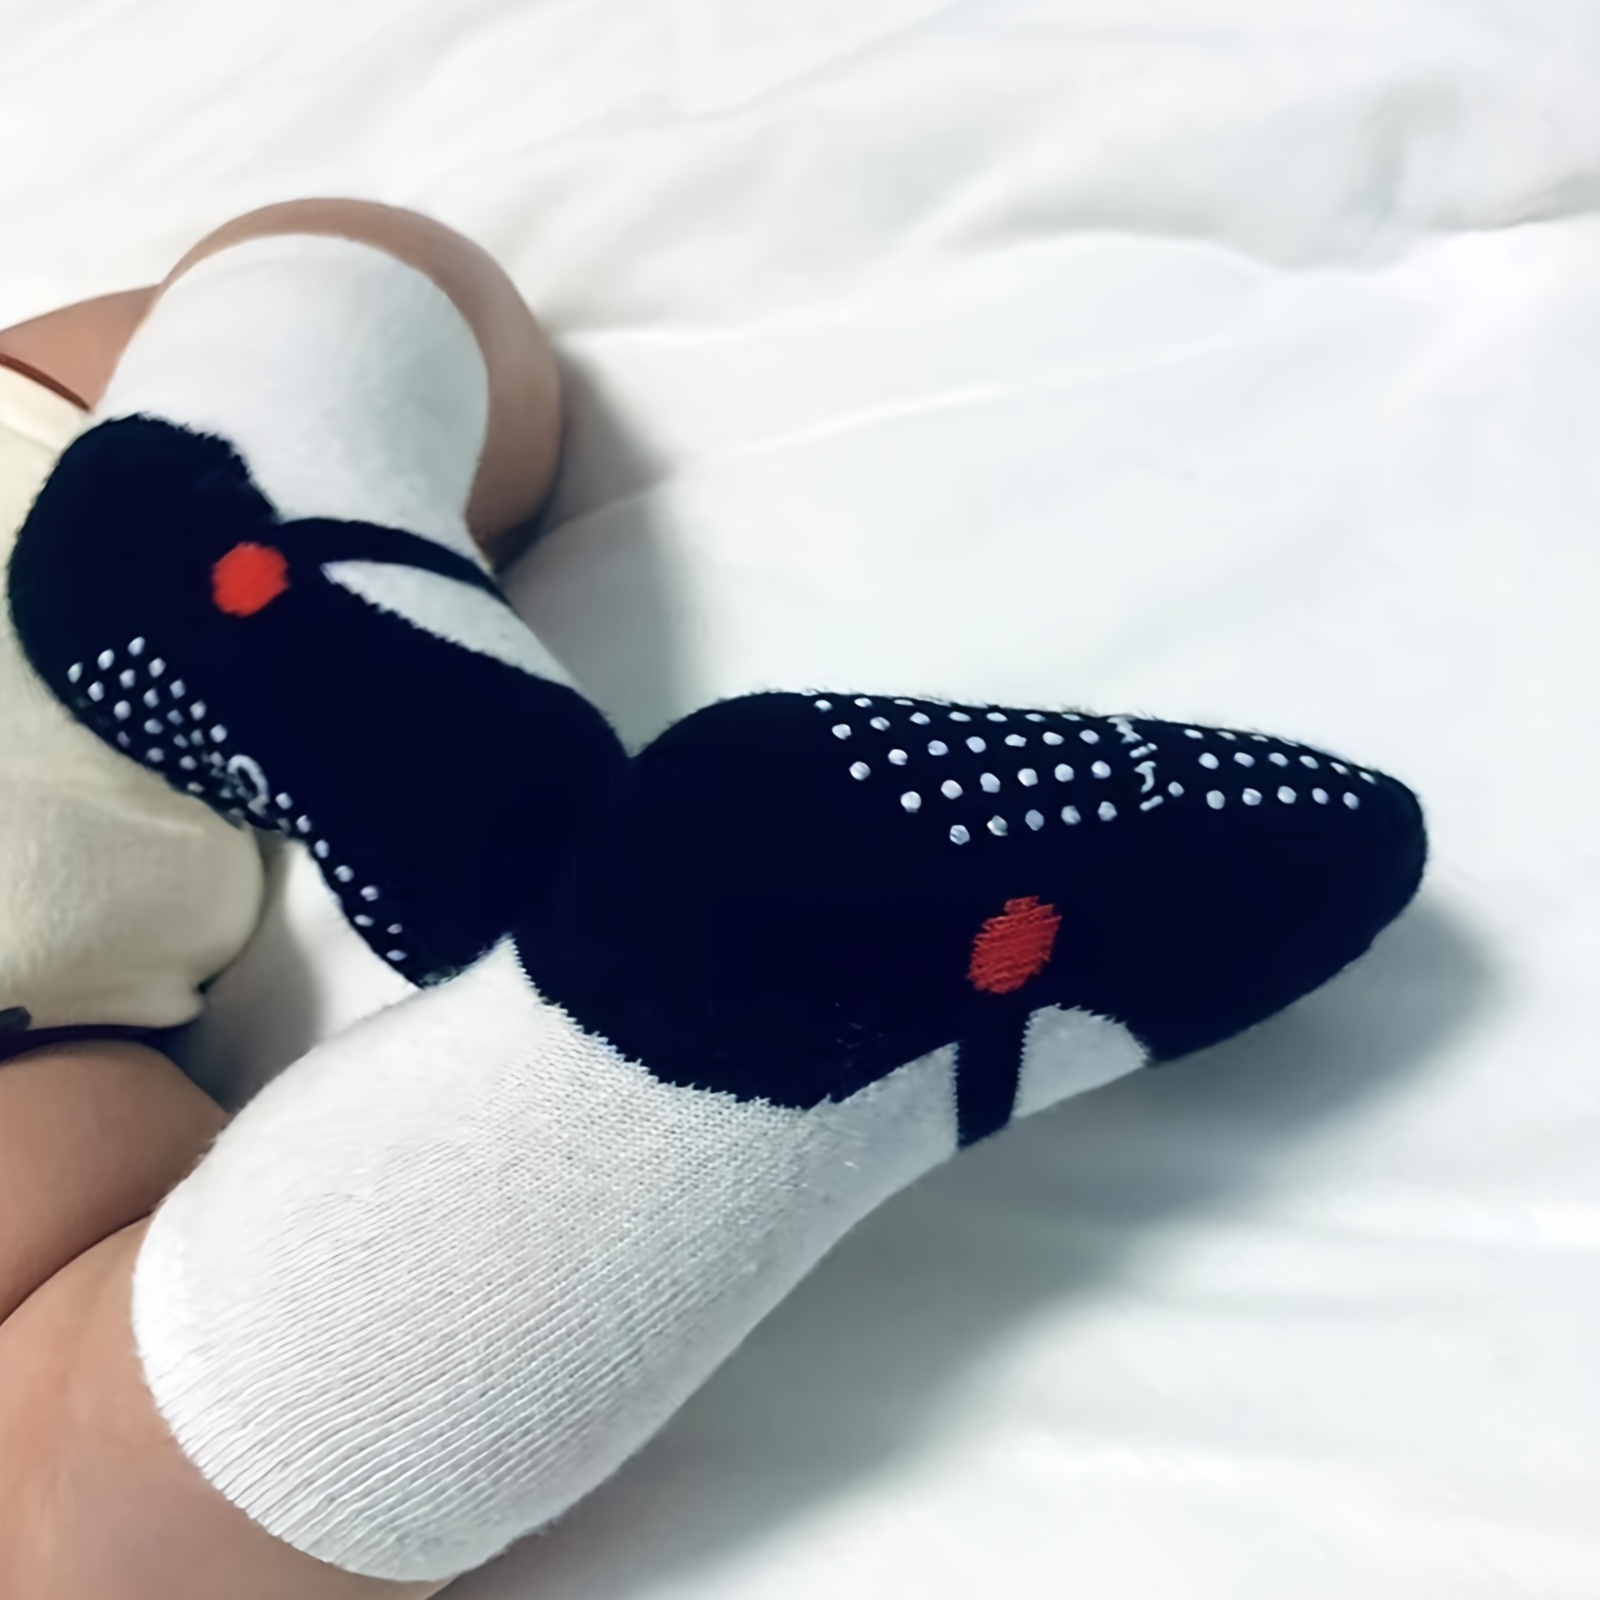 Calcetines unisex para bebé, calcetines antideslizantes de pato con parte  inferior de goma suave, botas de algodón para recién nacidos